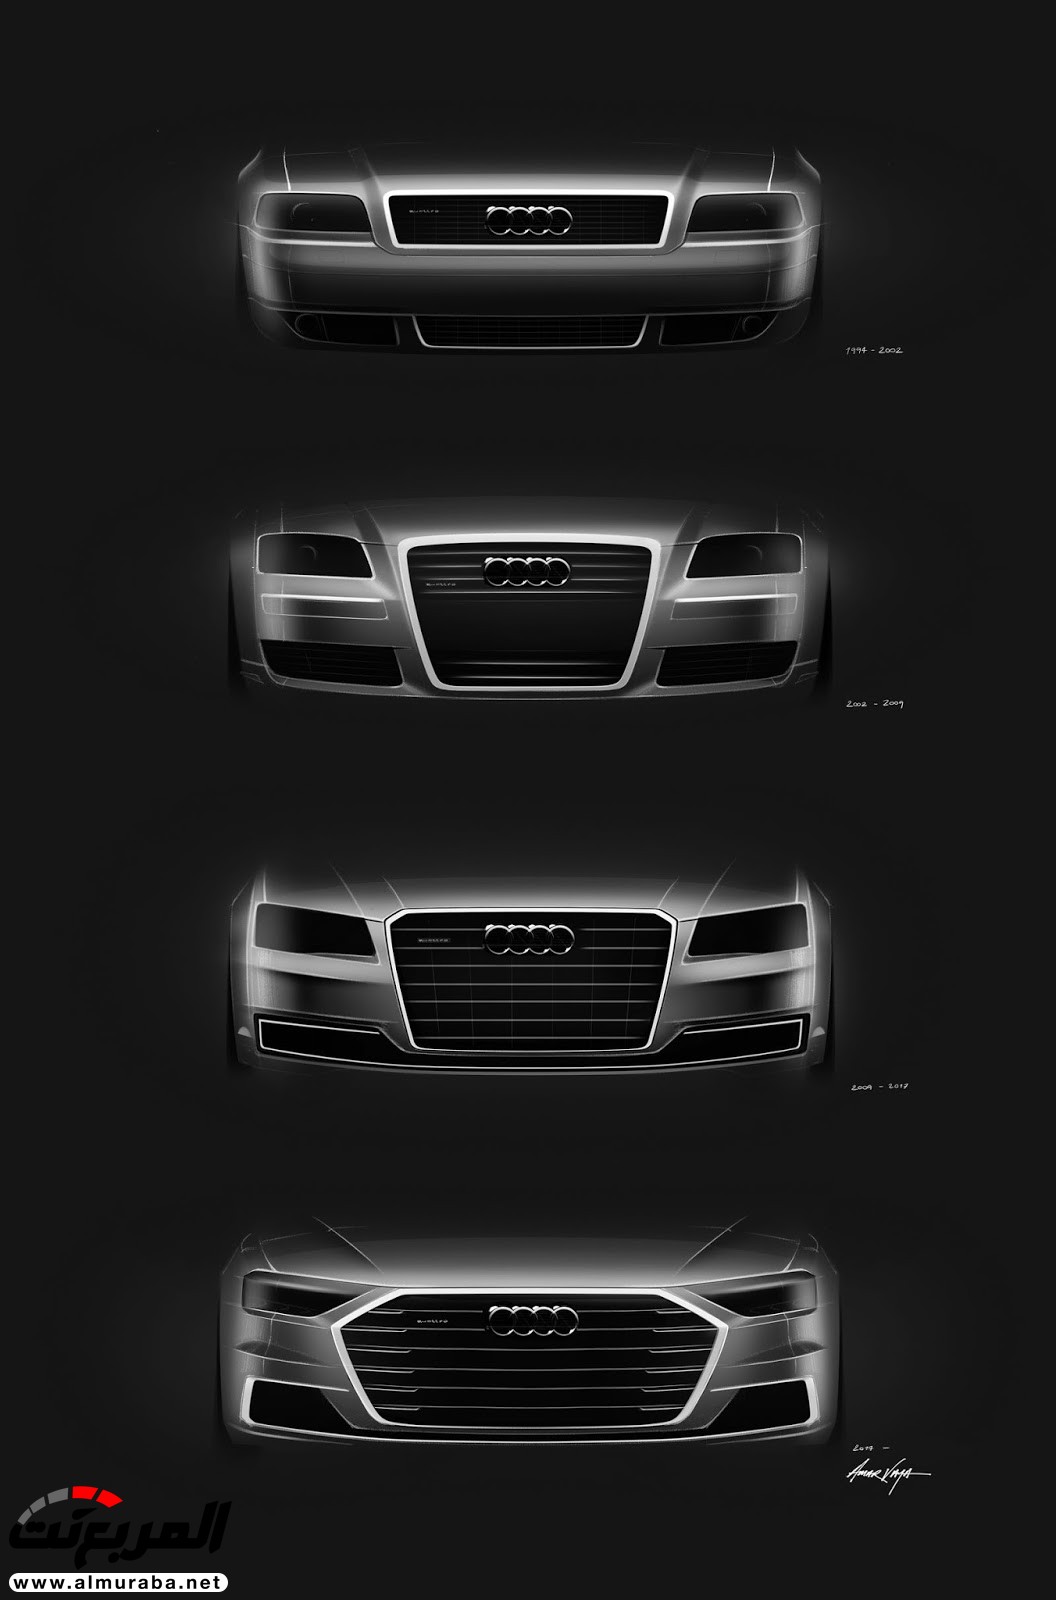 أودي A8 2018 الجديدة كلياً تكشف نفسها بتصميم وتقنيات متطورة "معلومات + 100 صورة" Audi A8 121